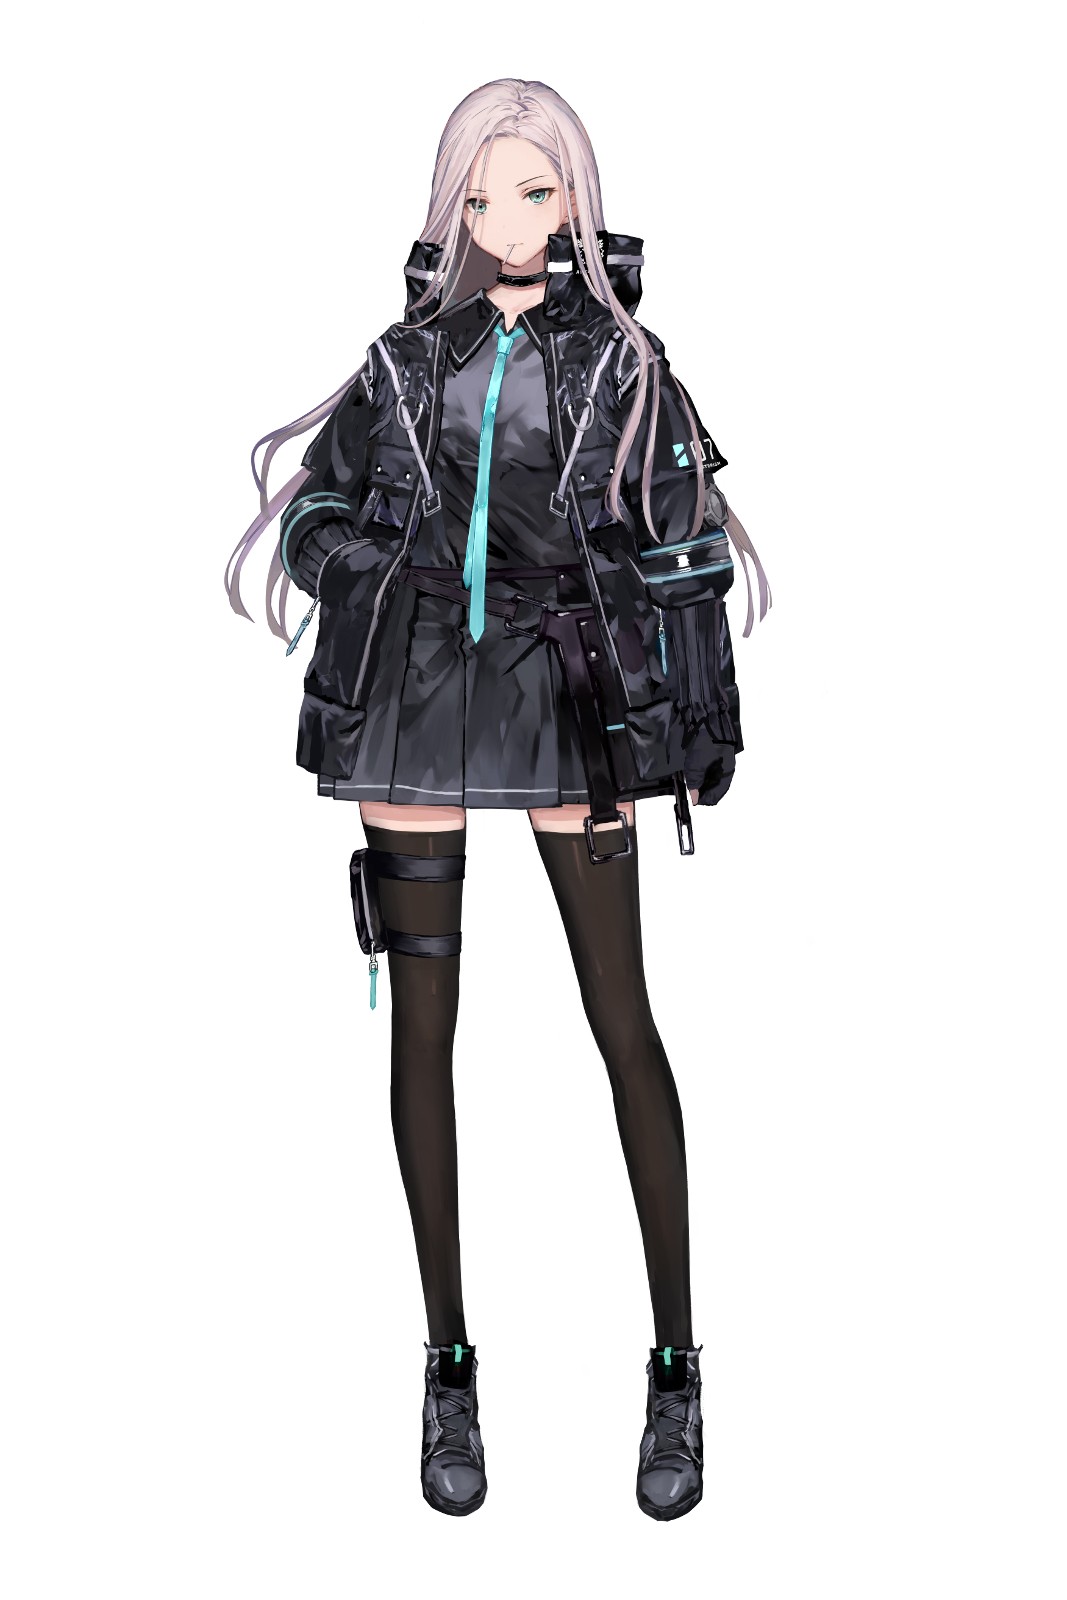 模擬戰略 RPG《Relayer》公布明坂聰美飾演的主角 「泰菈」 等登場角色資訊